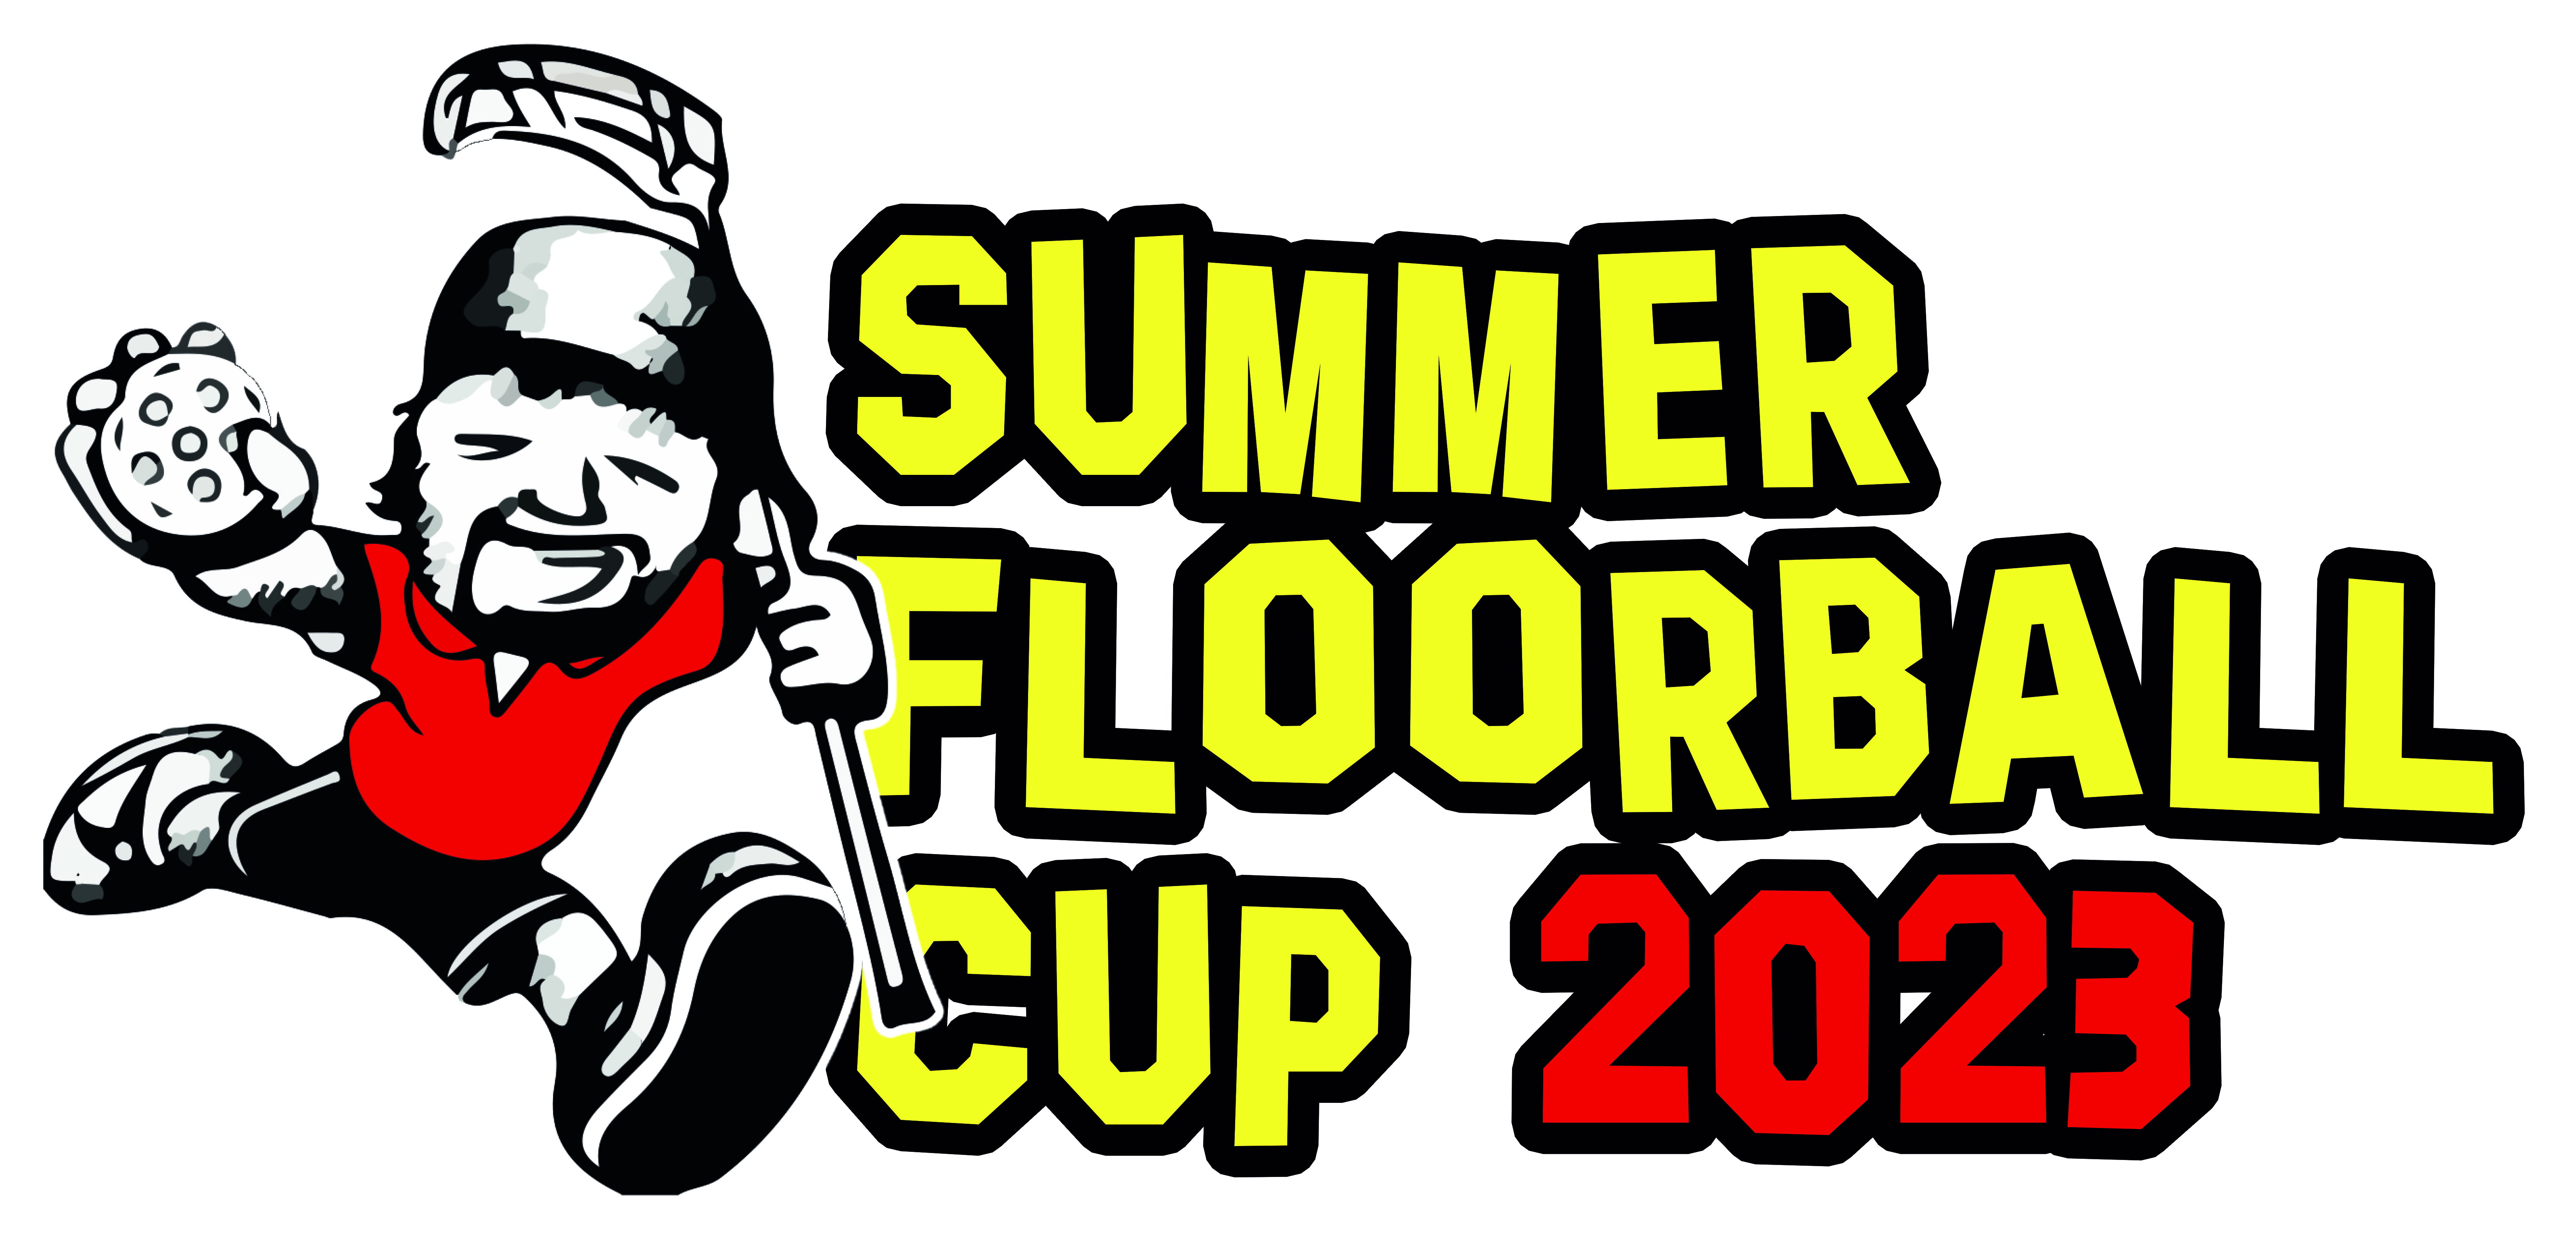 Summer Floorball Cup